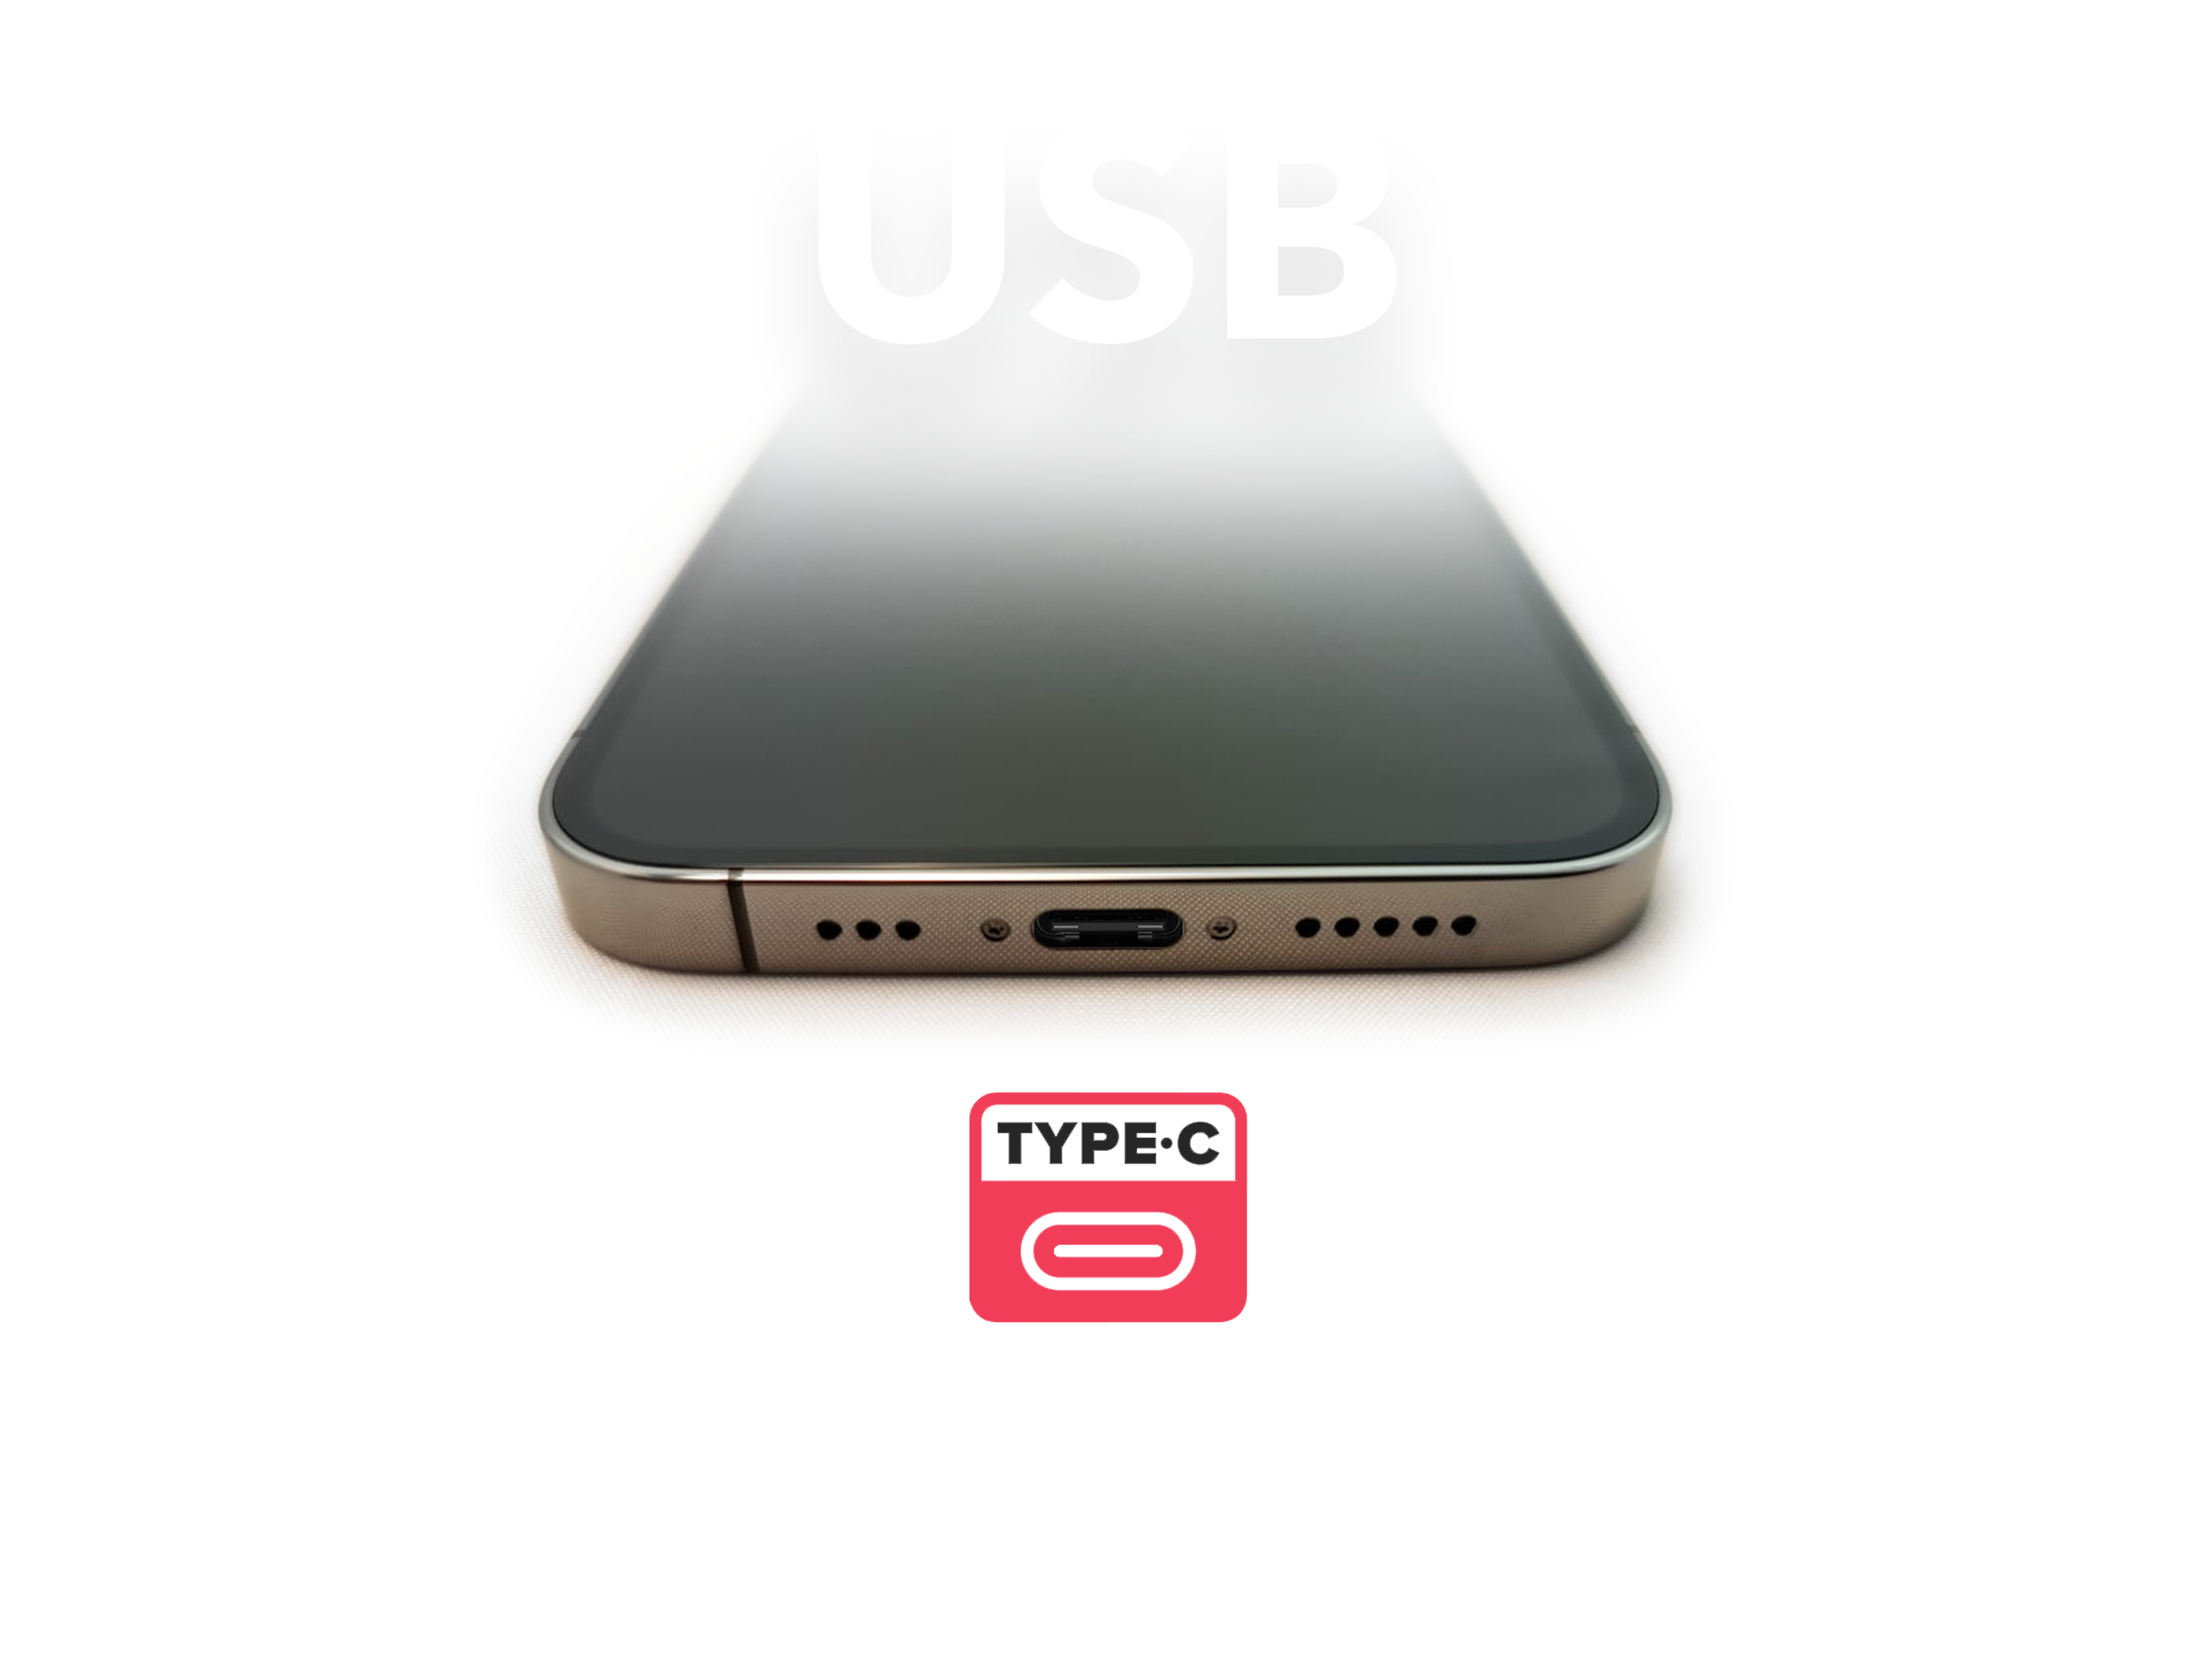 Das weltweit erste Apple iPhone 12 Pro Max mit USB-C-Port geht in